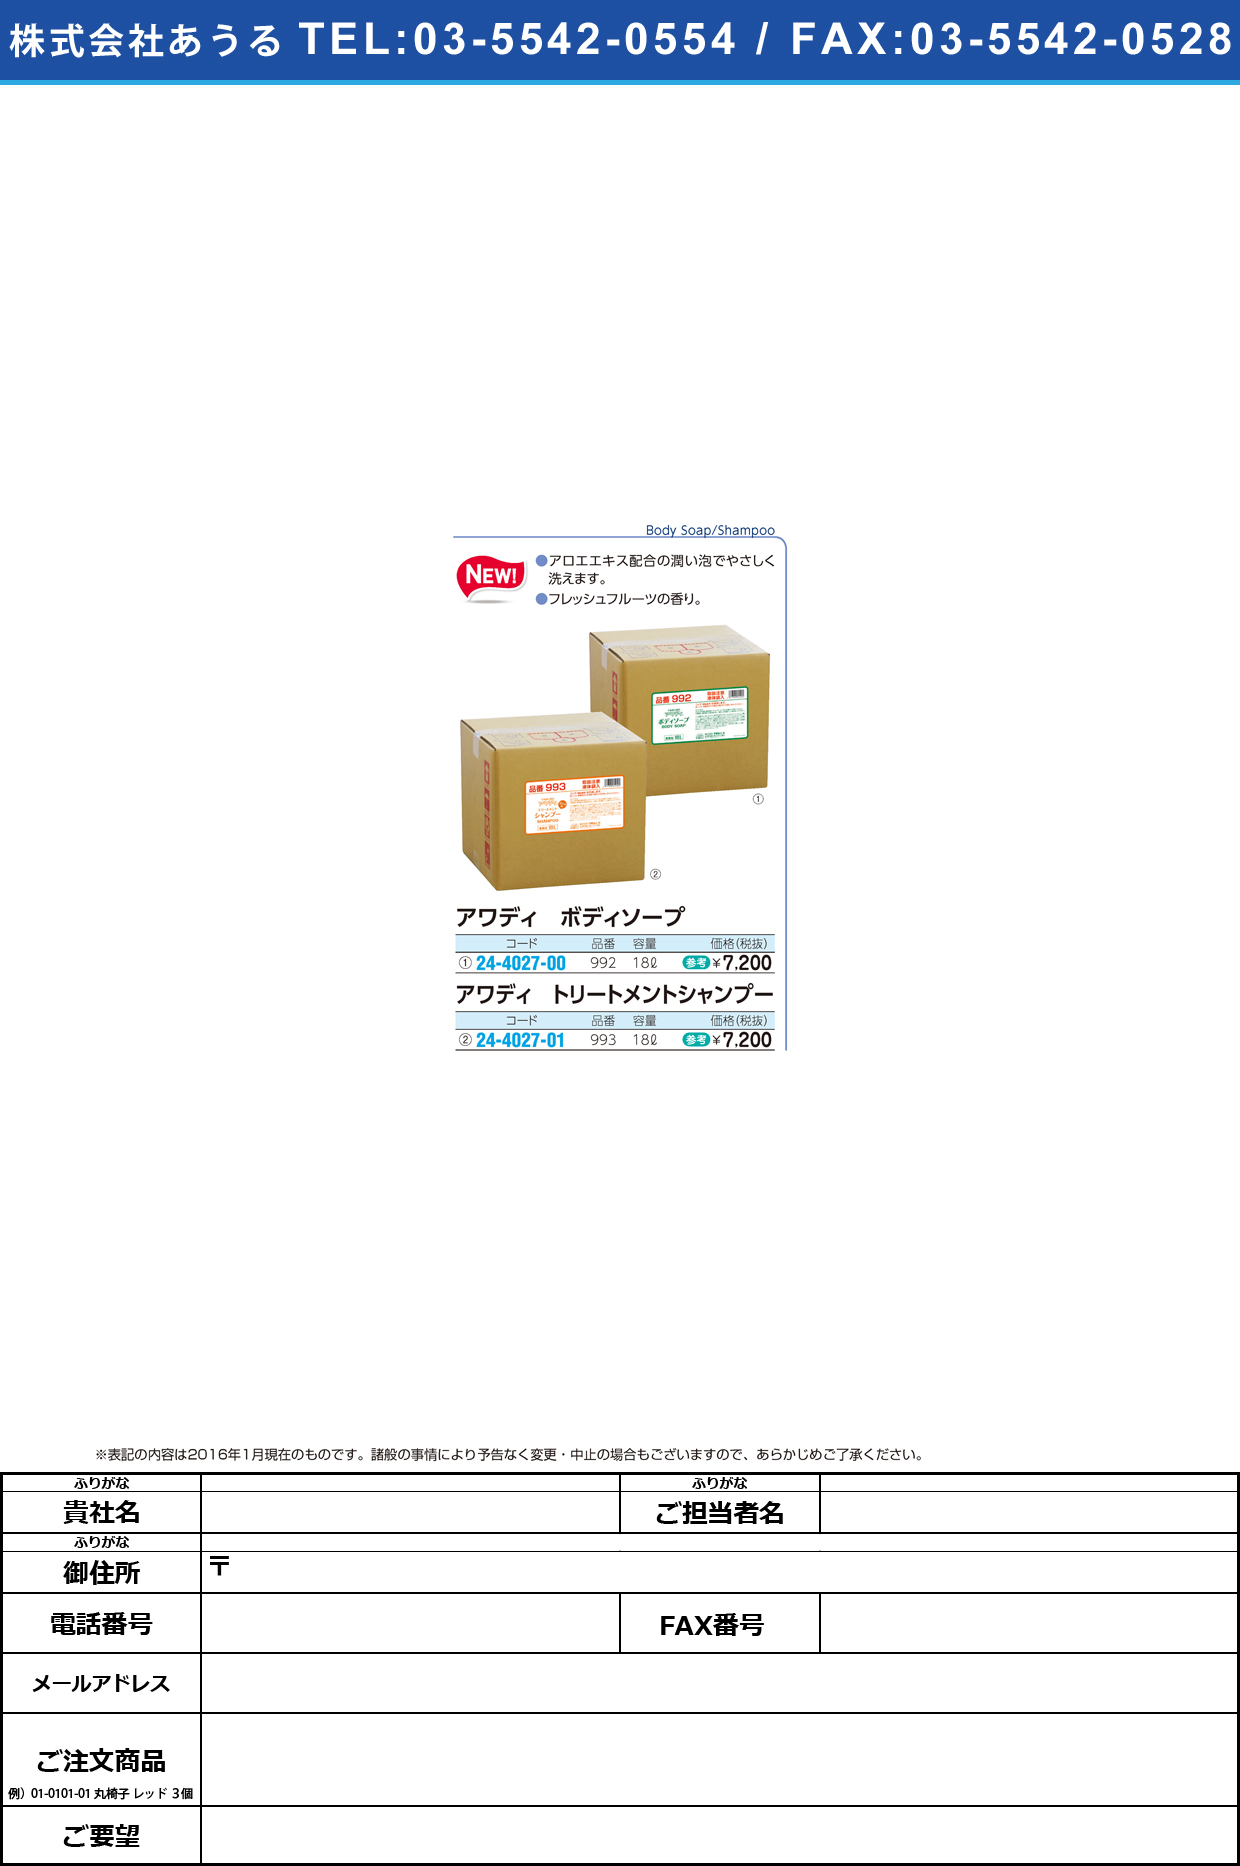 (24-4027-00)アワディ ボディソープ ｱﾜﾃﾞｨﾎﾞﾃﾞｨｿｰﾌﾟ 992(18L)【1箱単位】【2016年カタログ商品】